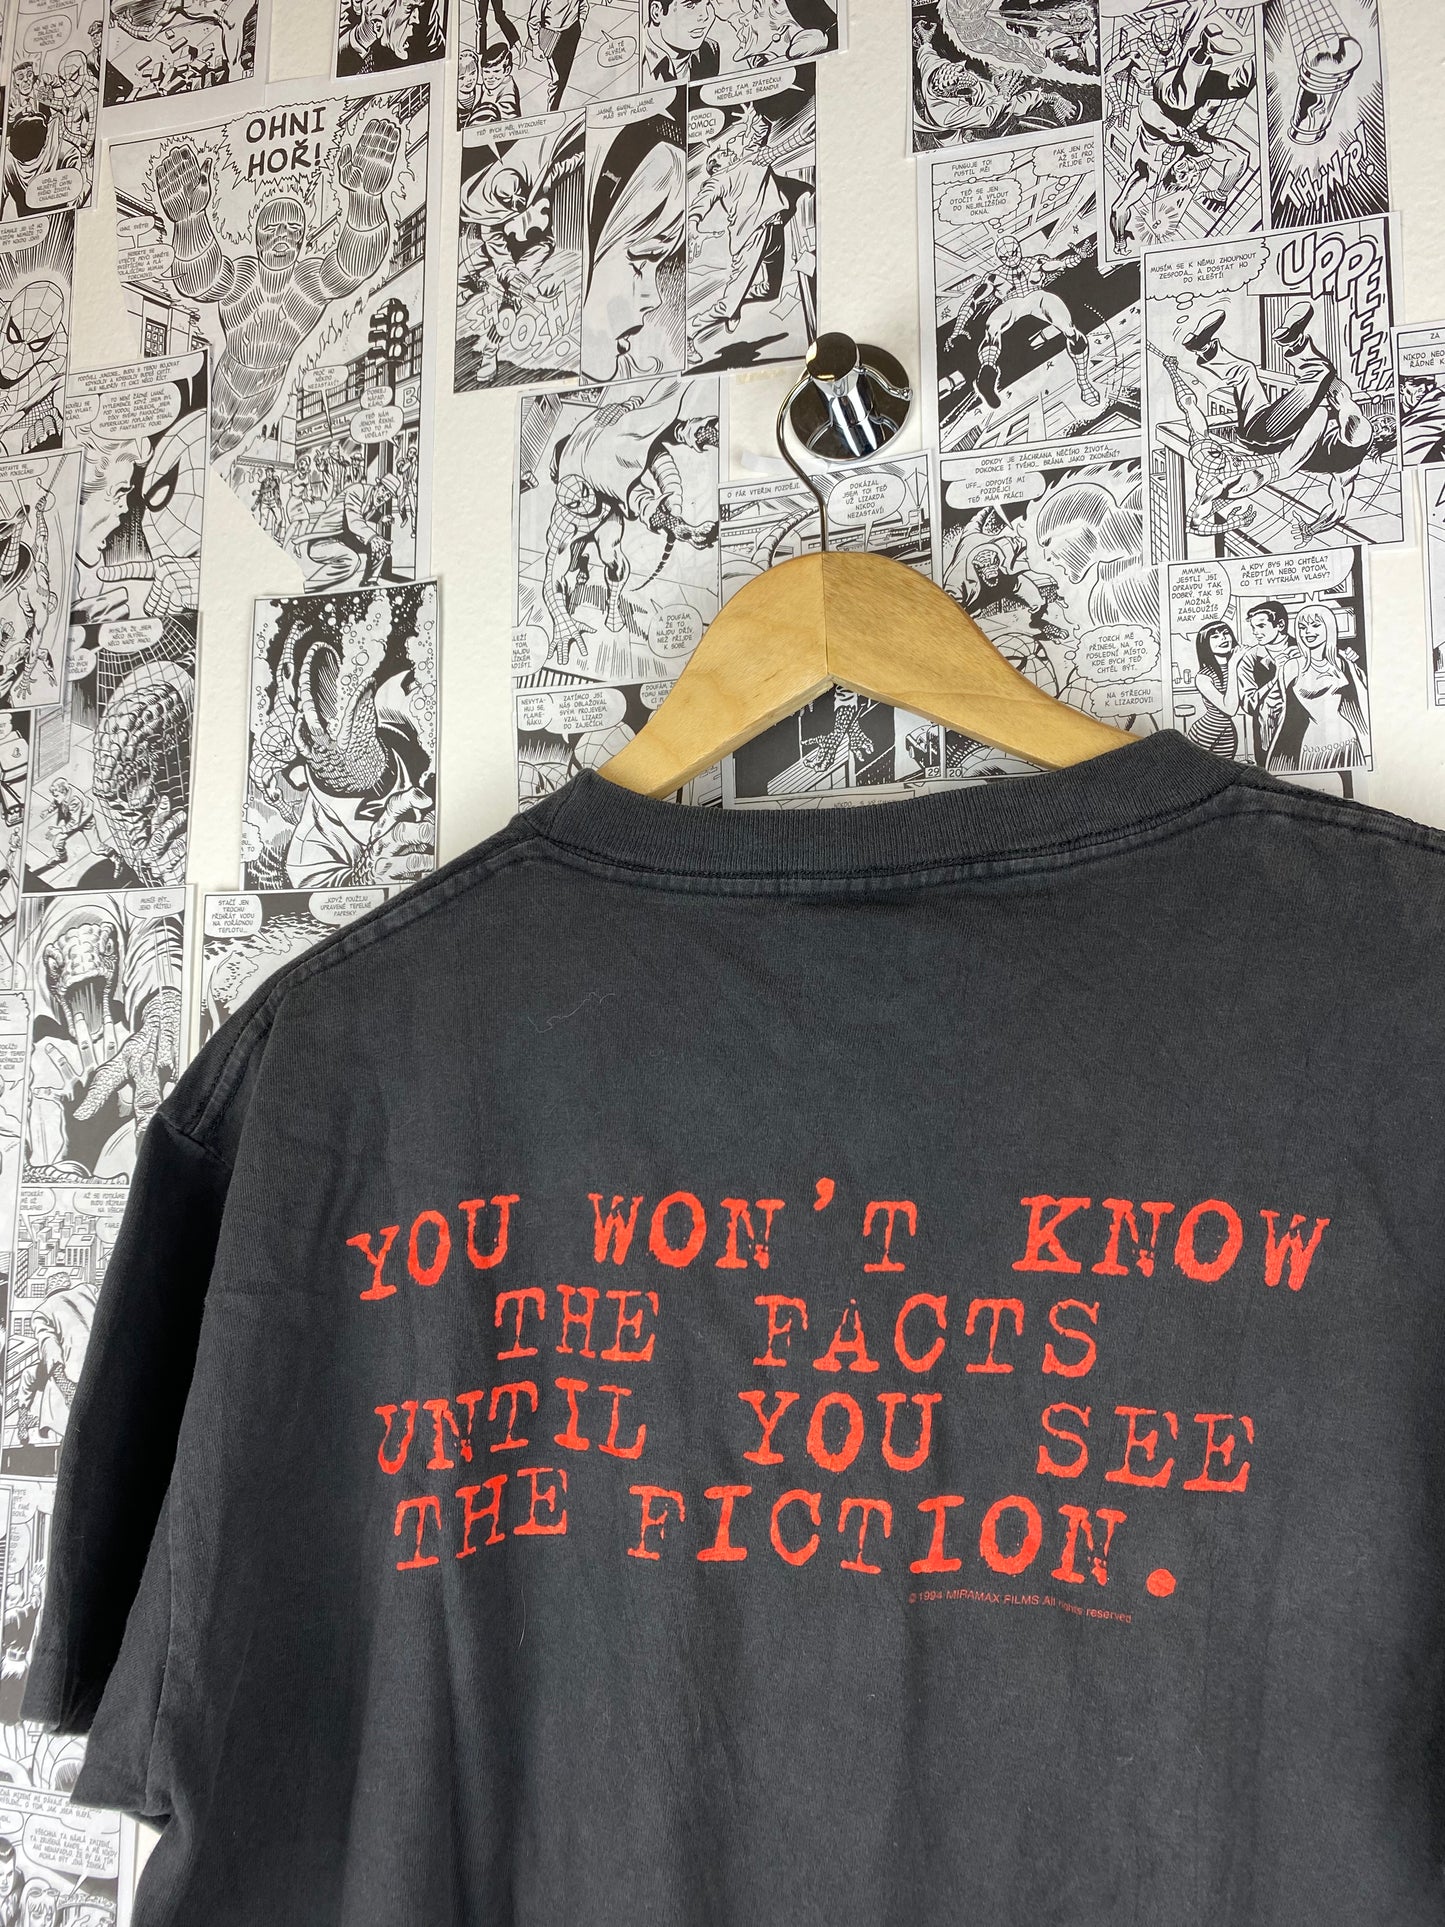 Vintage Pulp Fiction 1994 t-shirt - size L